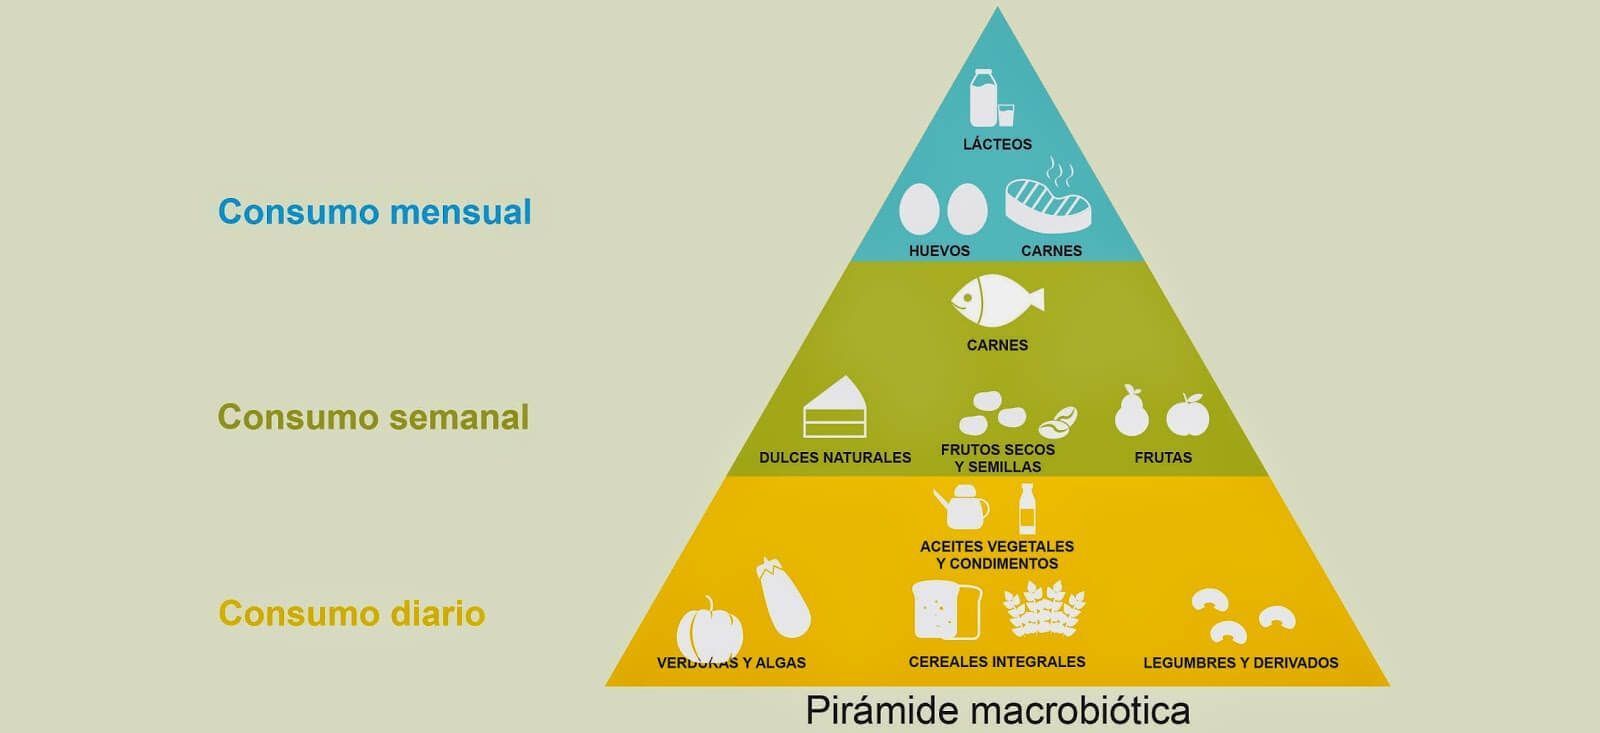 La piramide de la alimentación macrobiótica